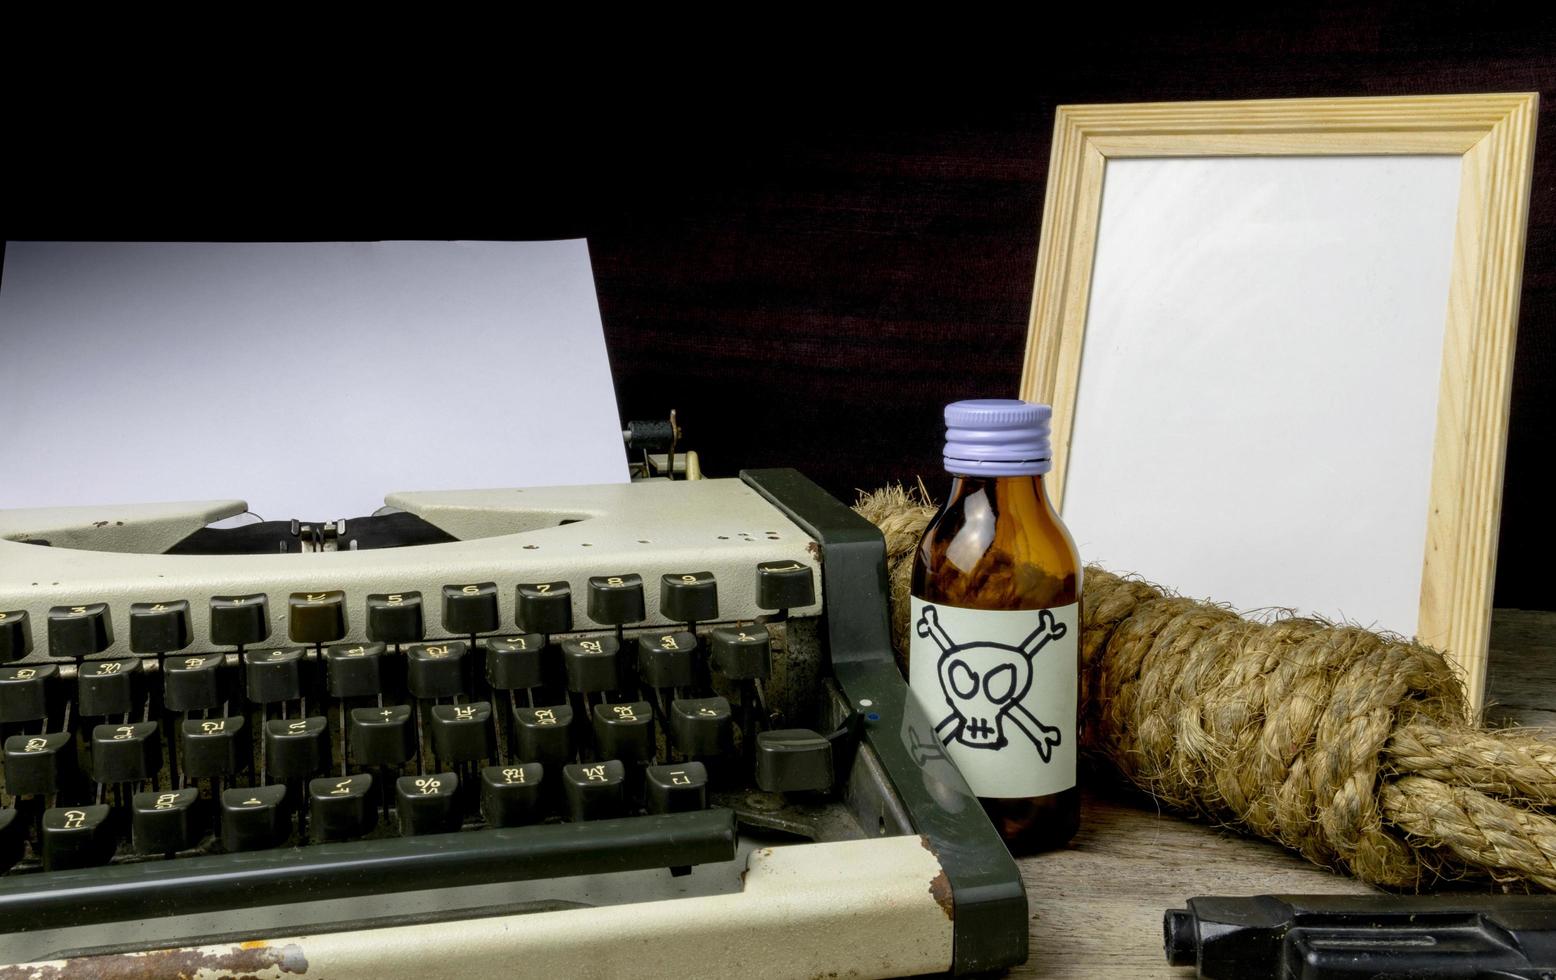 machine à écrire avec page papier et poison et arme à feu. concept scénariste romance suspense photo